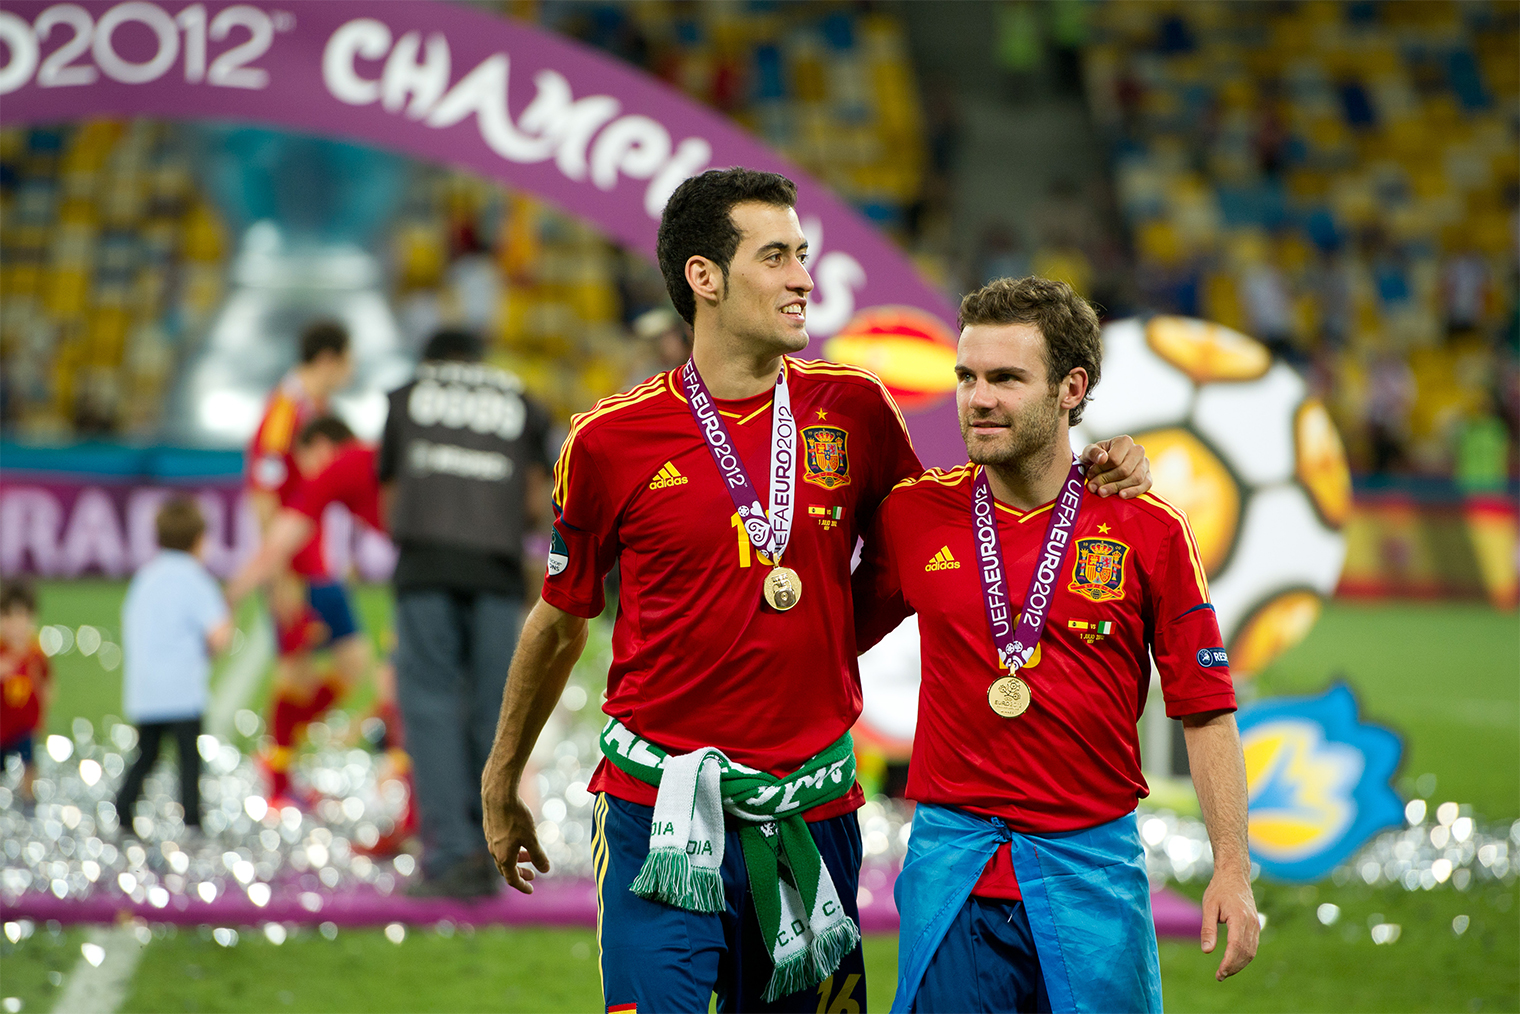 Чемпионы Европы 2012 года в составе сборной Испании — опорник Серхио Бускетс и атакующий полузащитник Хуан Мата. Фото: Matthew Ashton / Getty Images